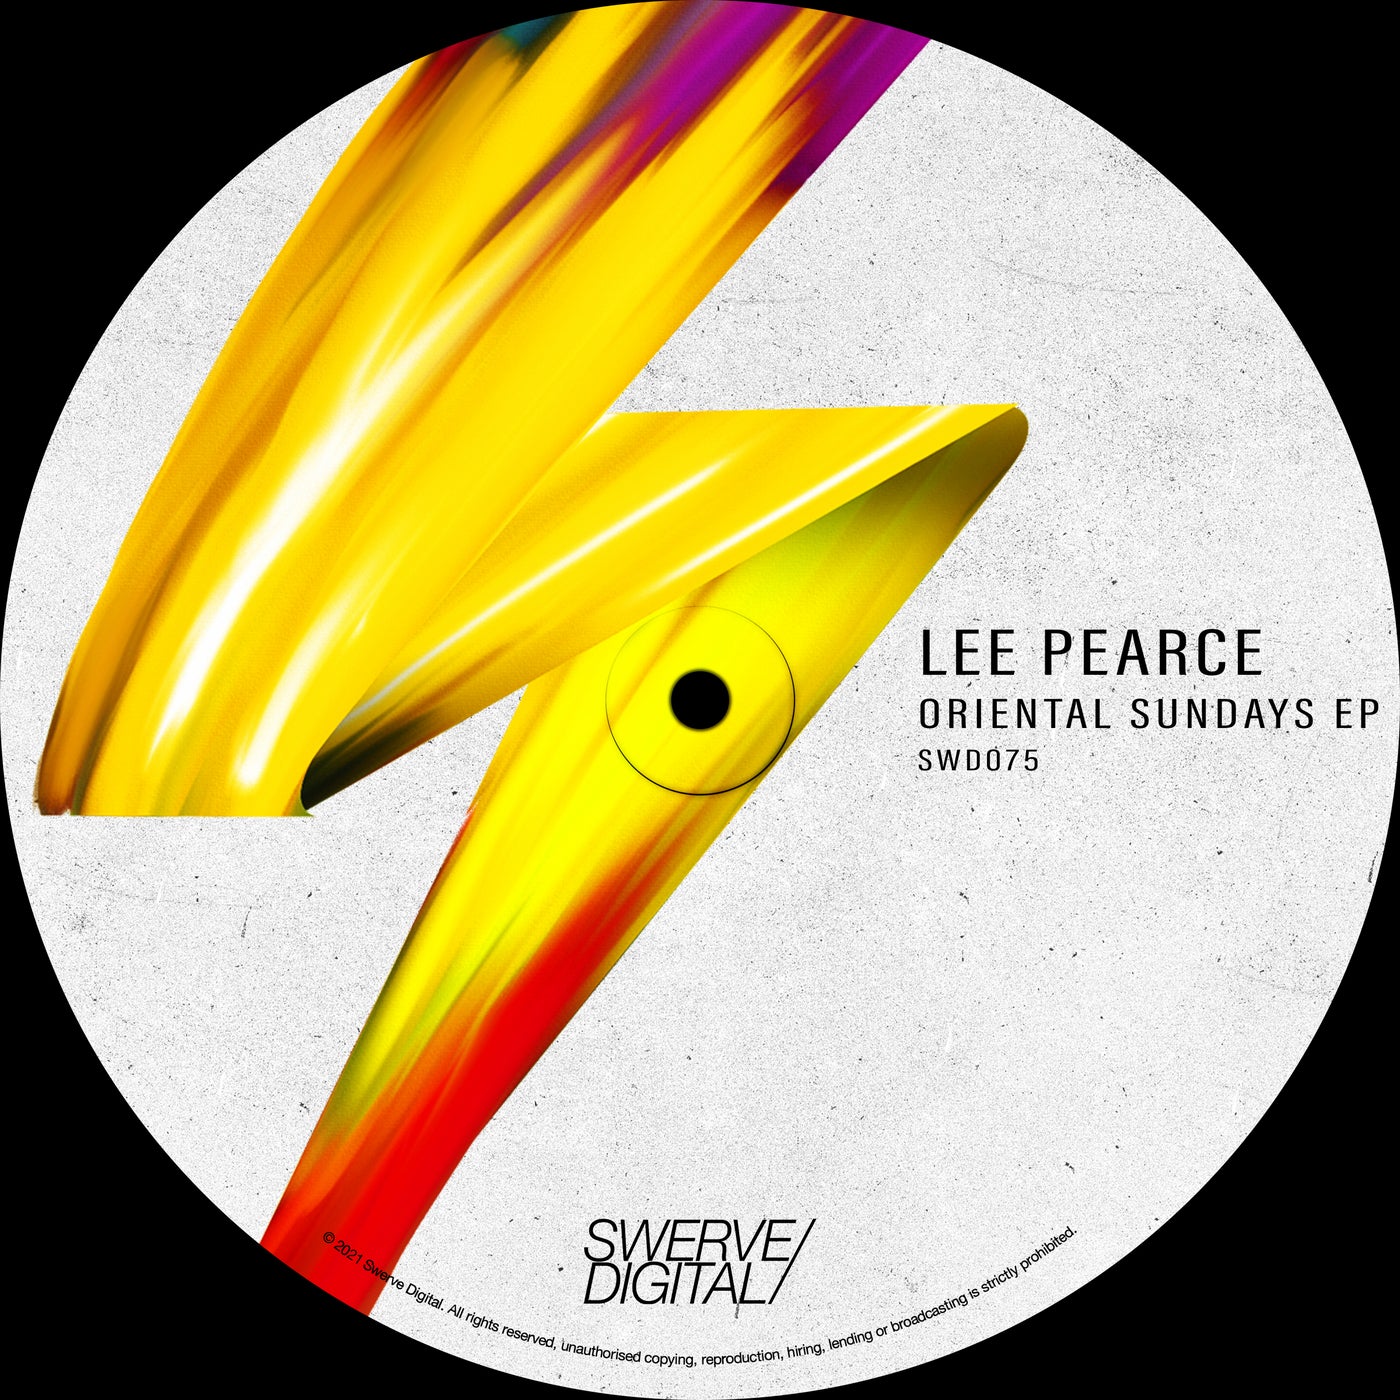 Lee Pearce – Oriental Sundays EP [SWD075]